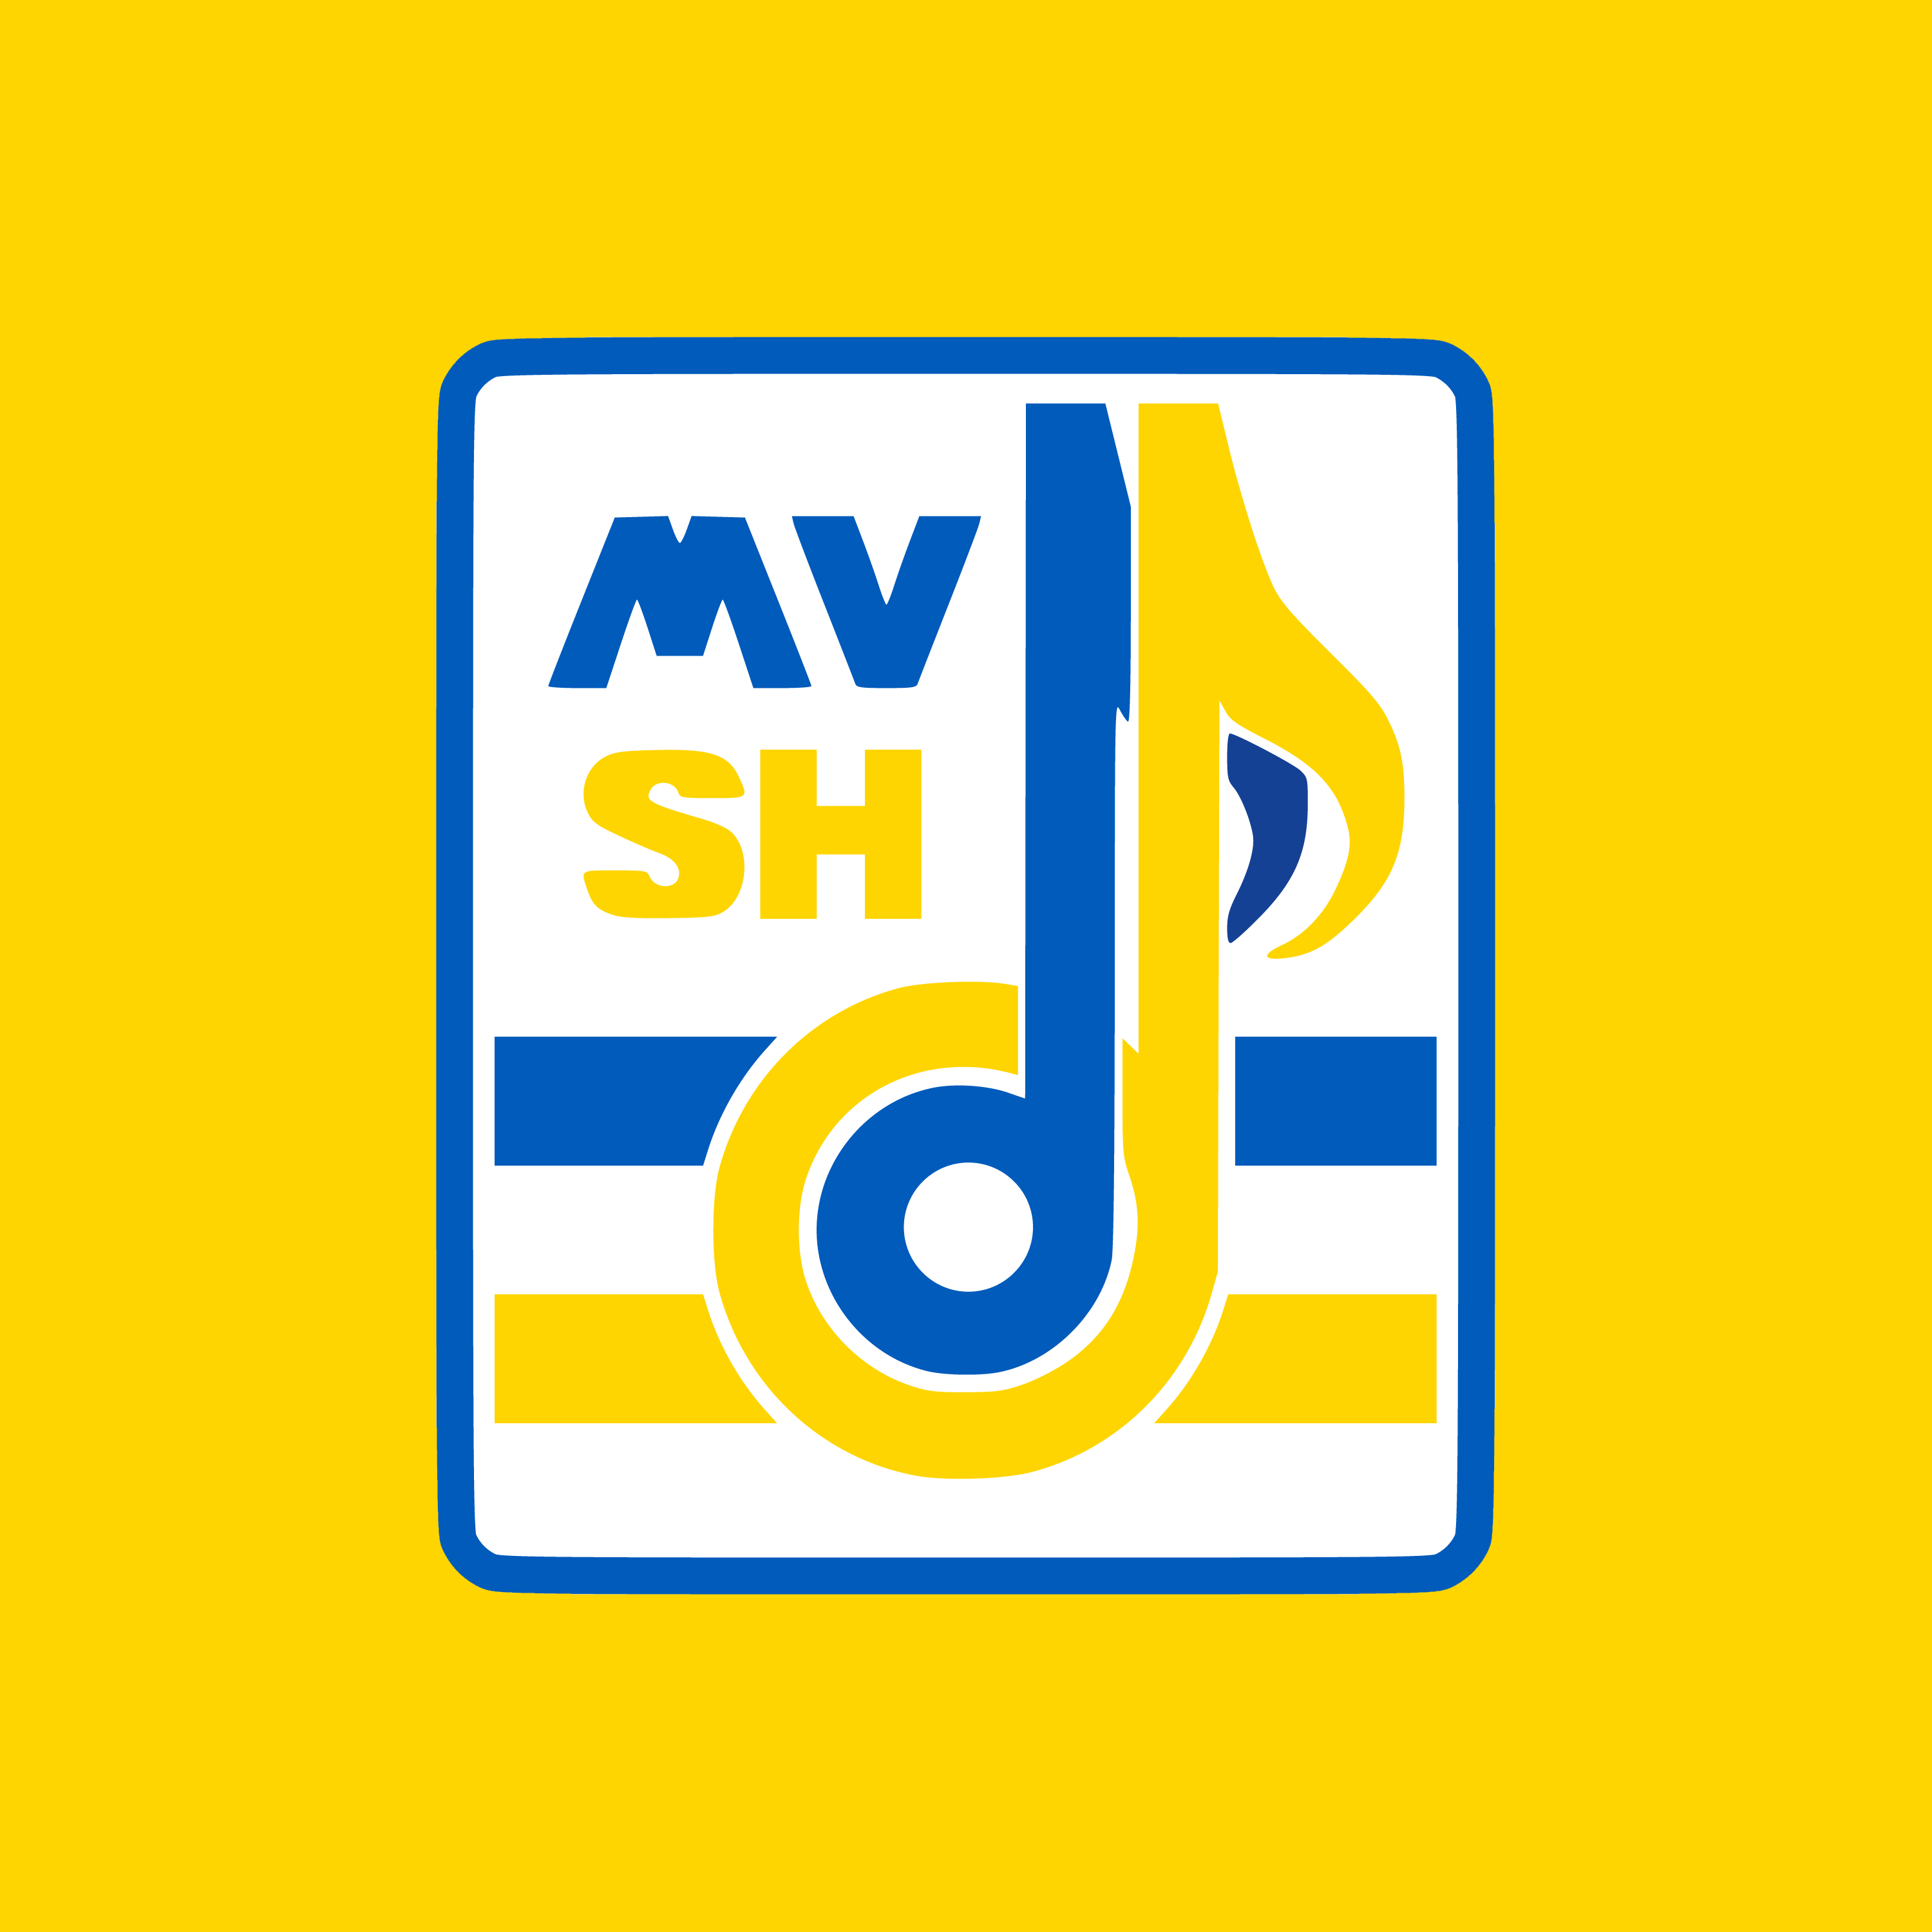 MVSH Logo 2022-02-24